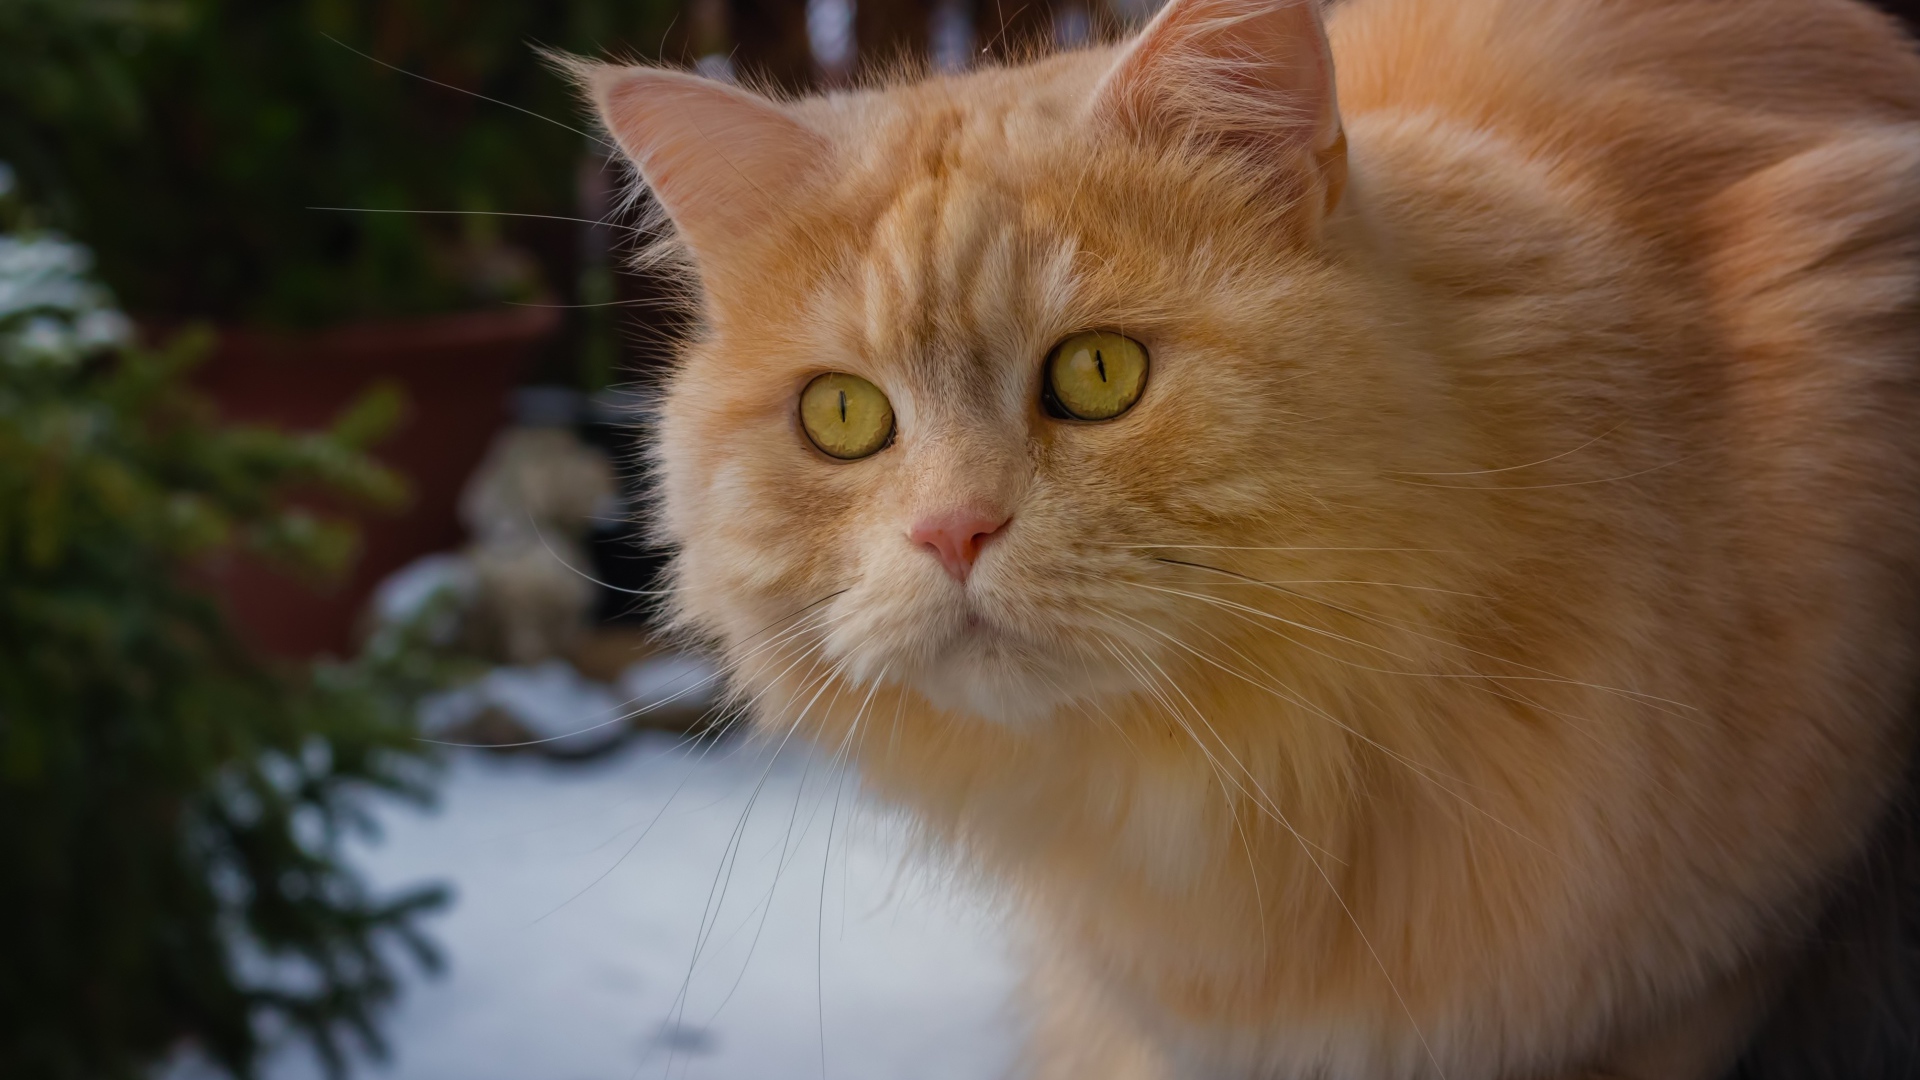 Большой рыжий кот с красивыми рыжими глазами